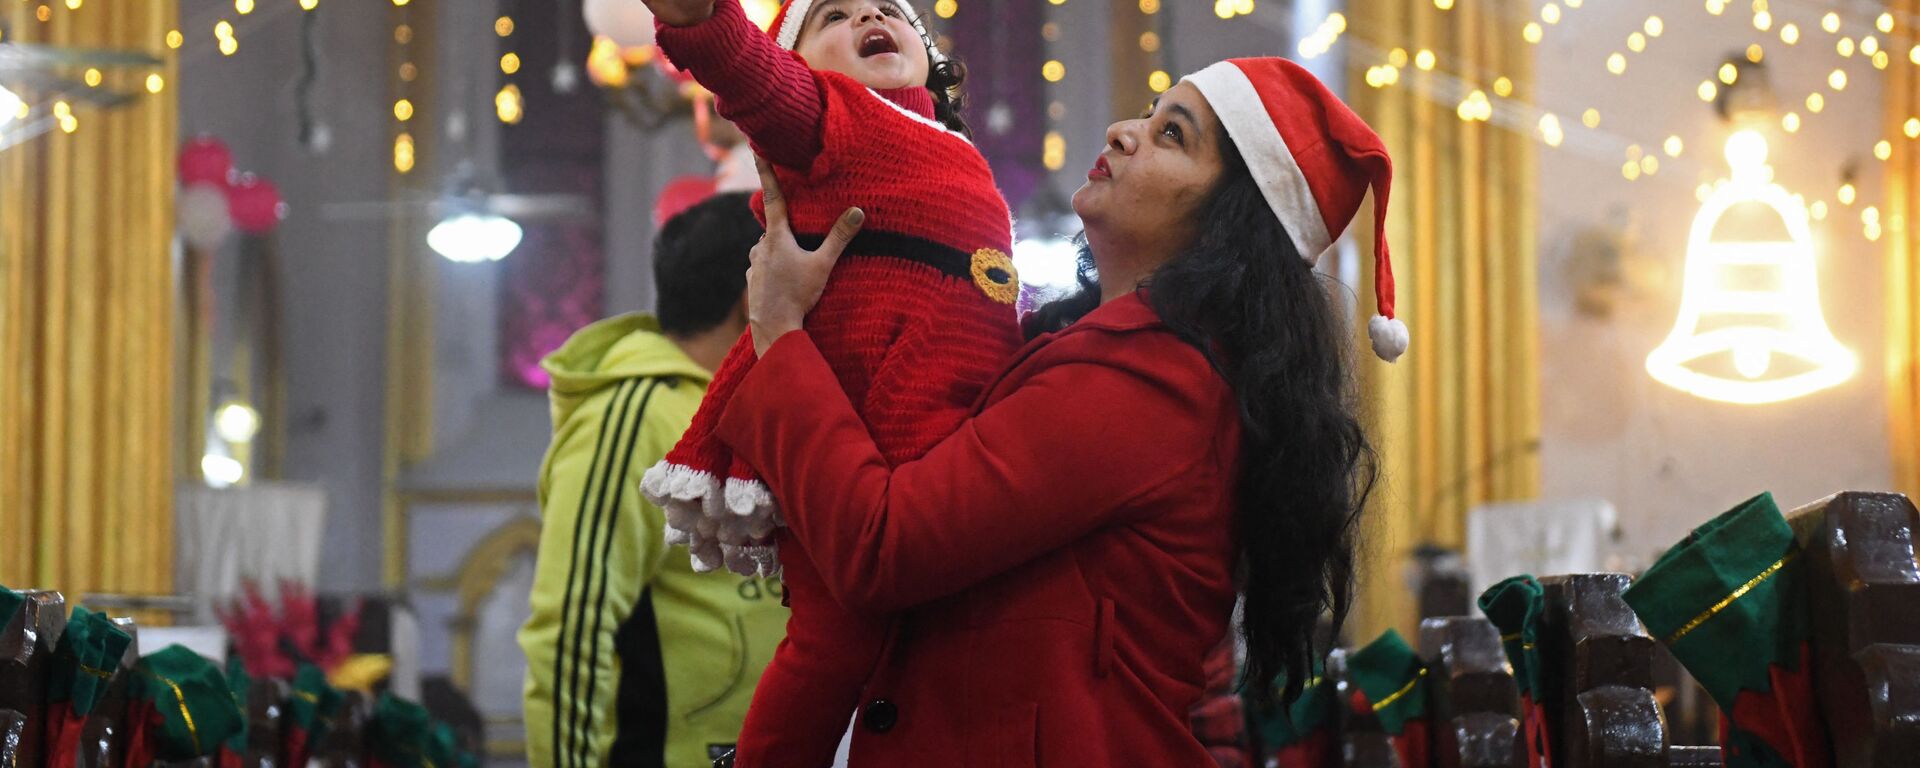 Мать держит ребенка в костюме Санта-Клауса накануне Рождества в церкви Святого Павла в Амритсаре, Индия - Sputnik Латвия, 1920, 25.12.2021